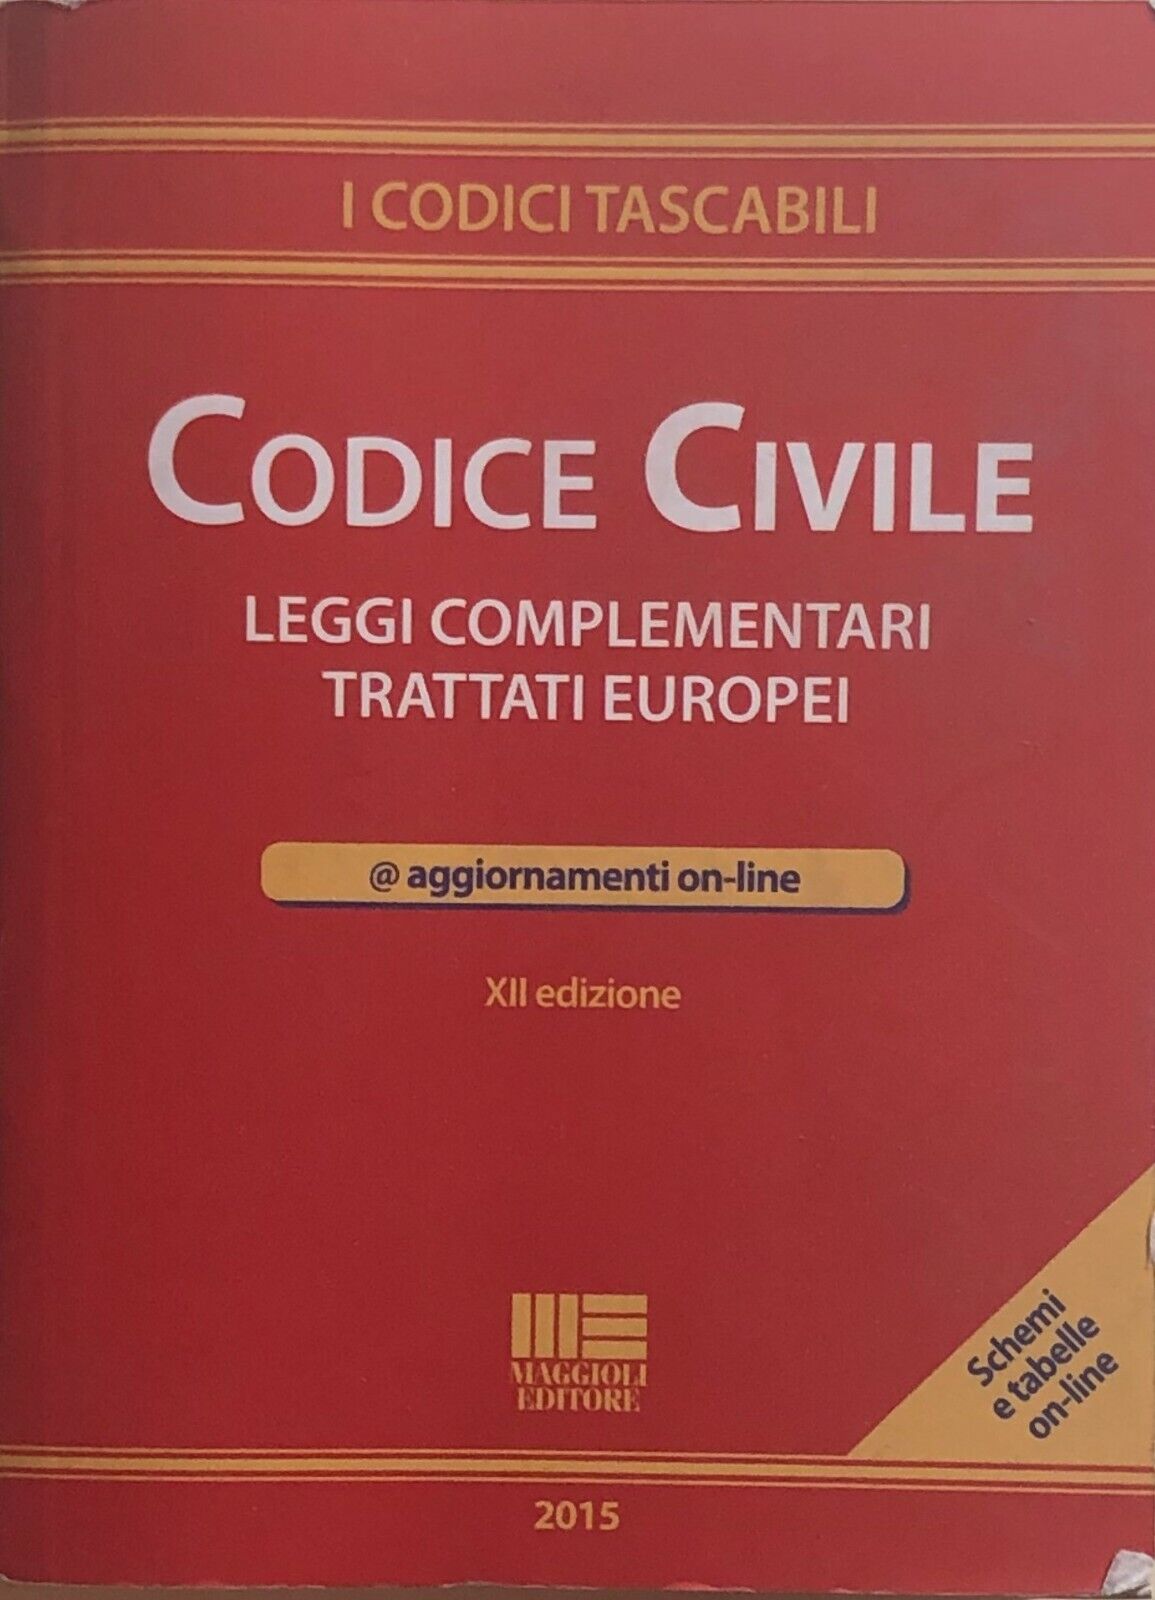 Codice civile di Aa.vv., 2015, Maggioli Editore